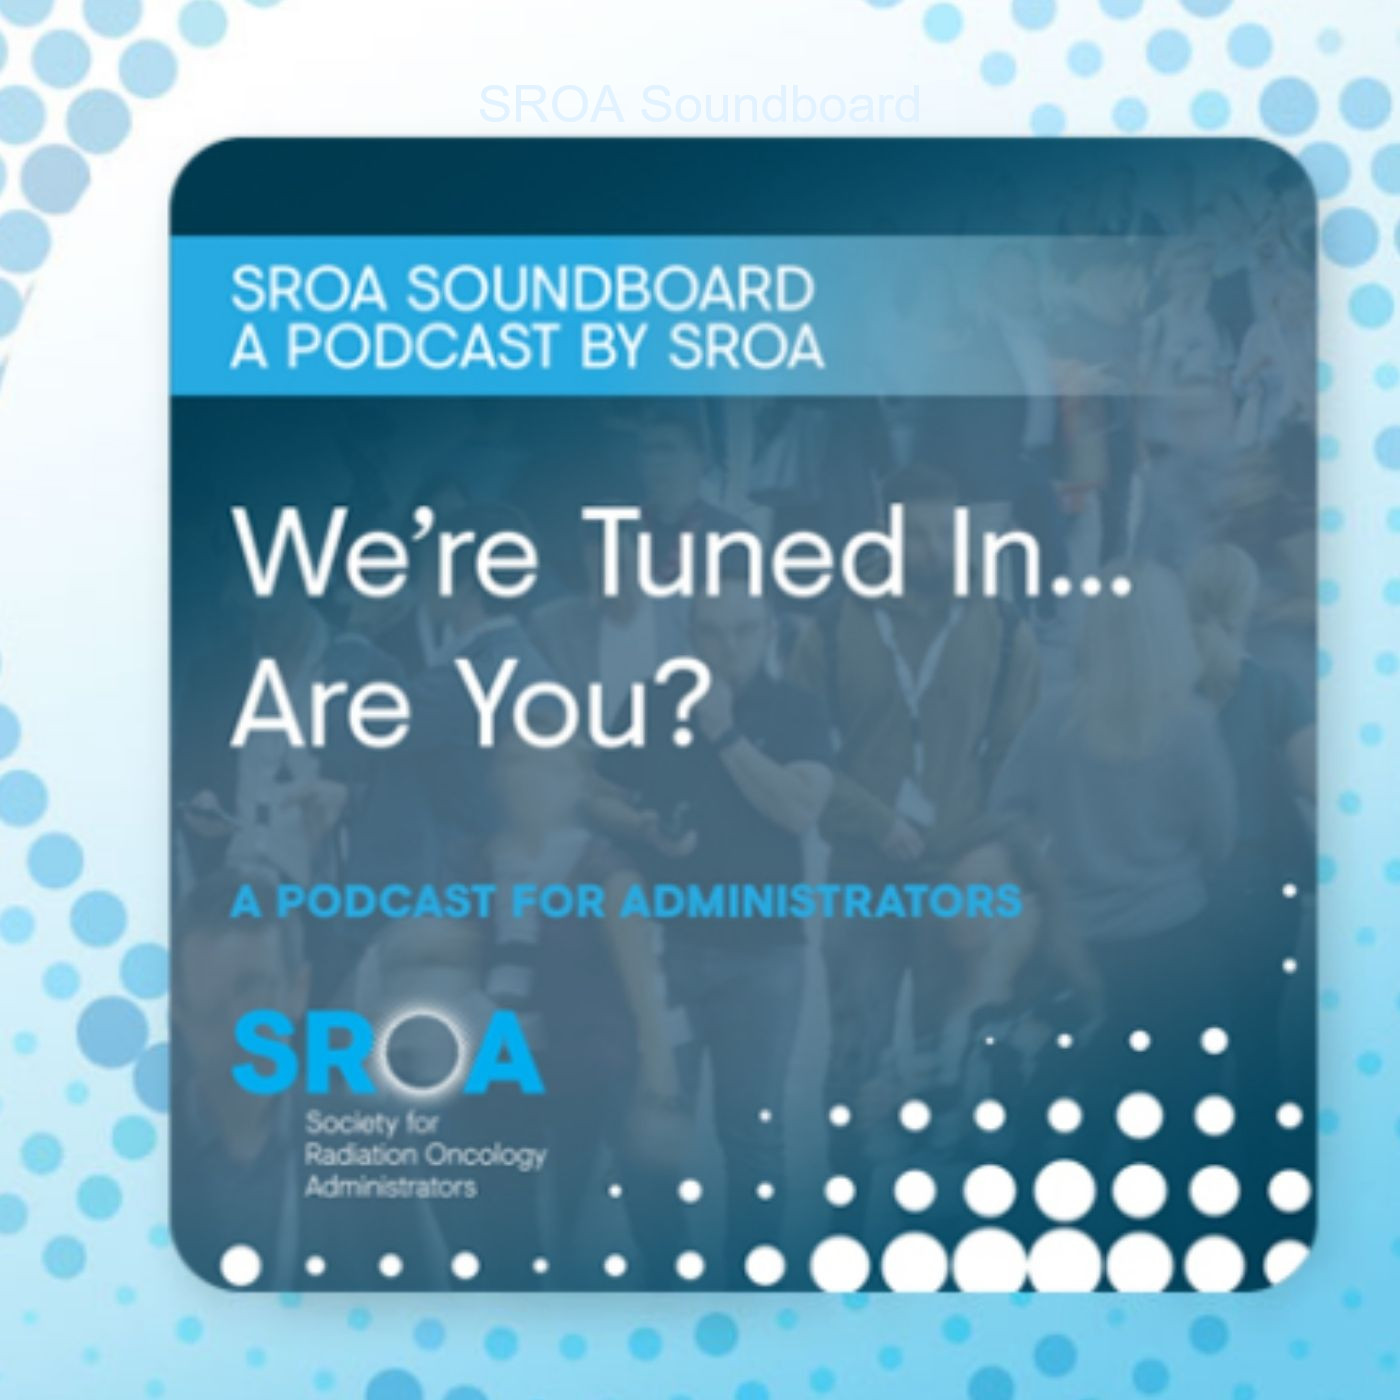 SROA Soundboard